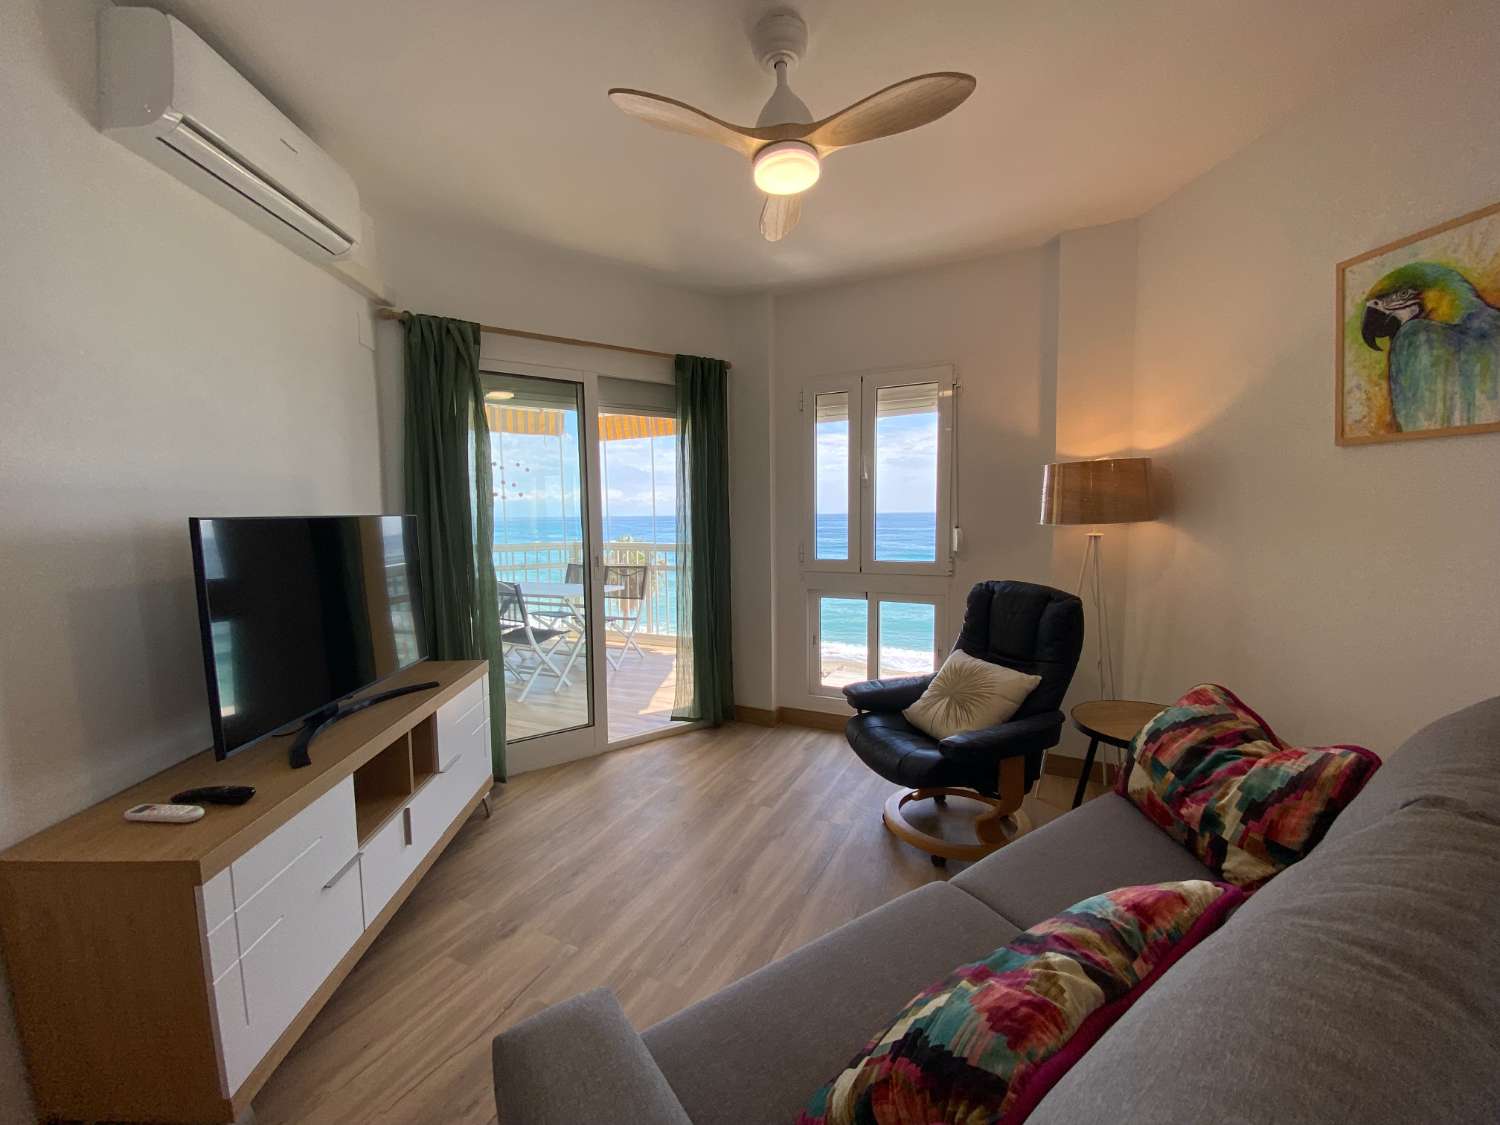 Otrolig renoverad lägenhet med panoramautsikt över havet: Det perfekta hemmet för strandälskare!&quot;